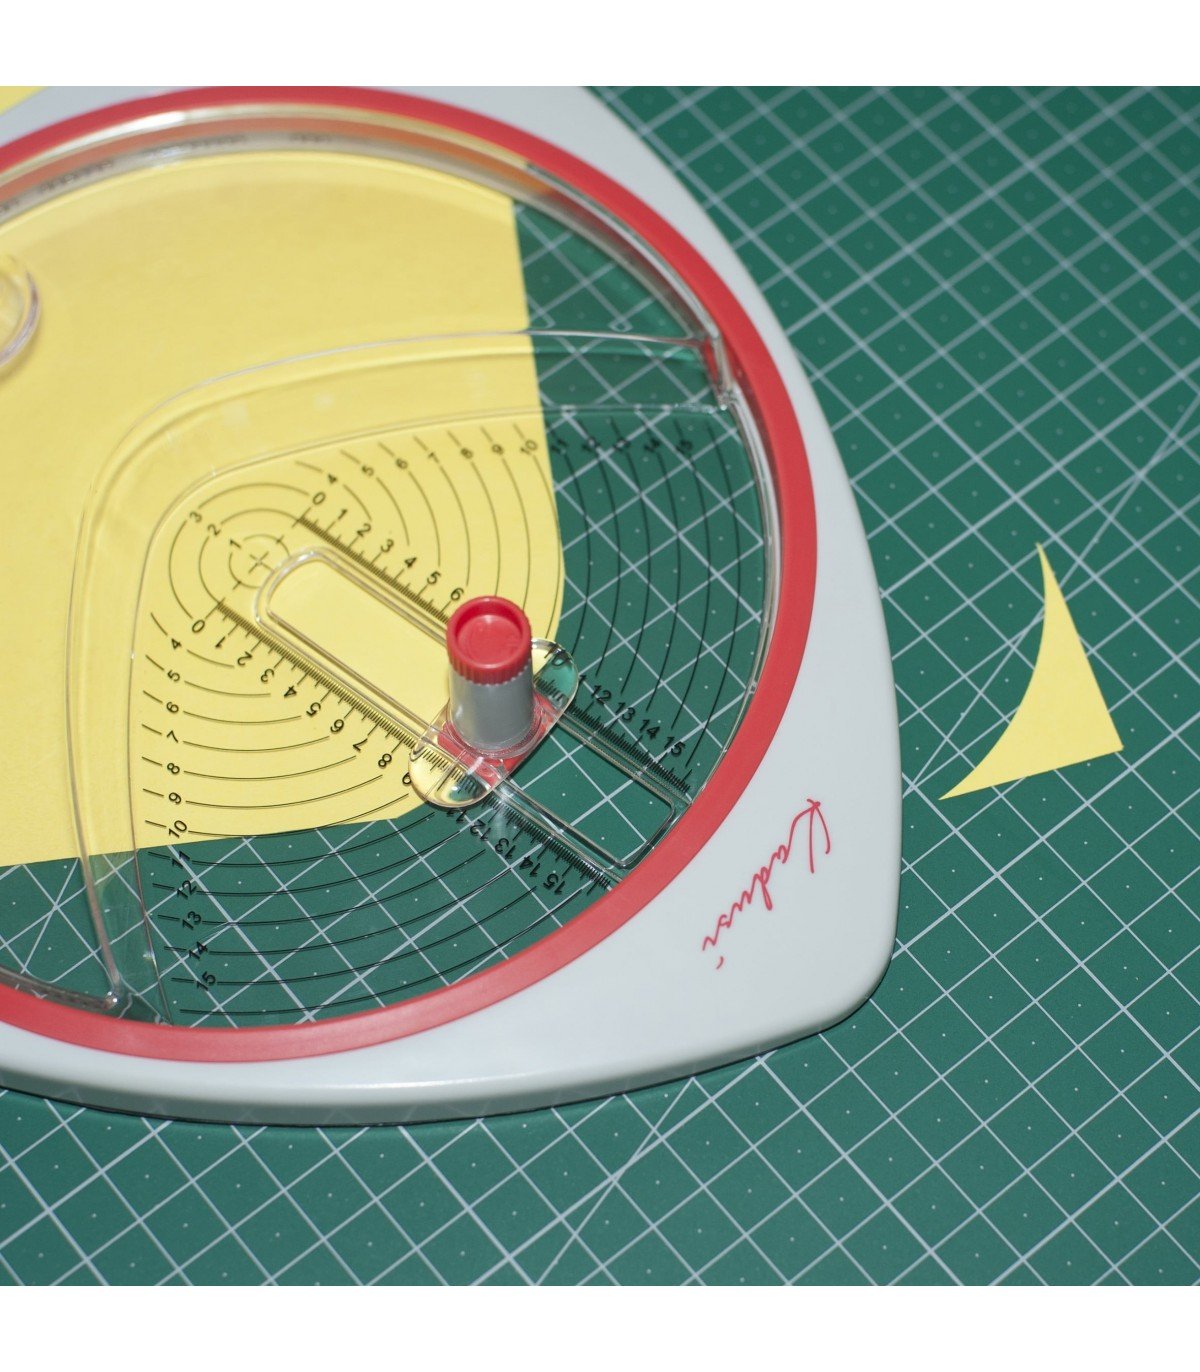 Cutter cortador circular para hacer circulos perfectos